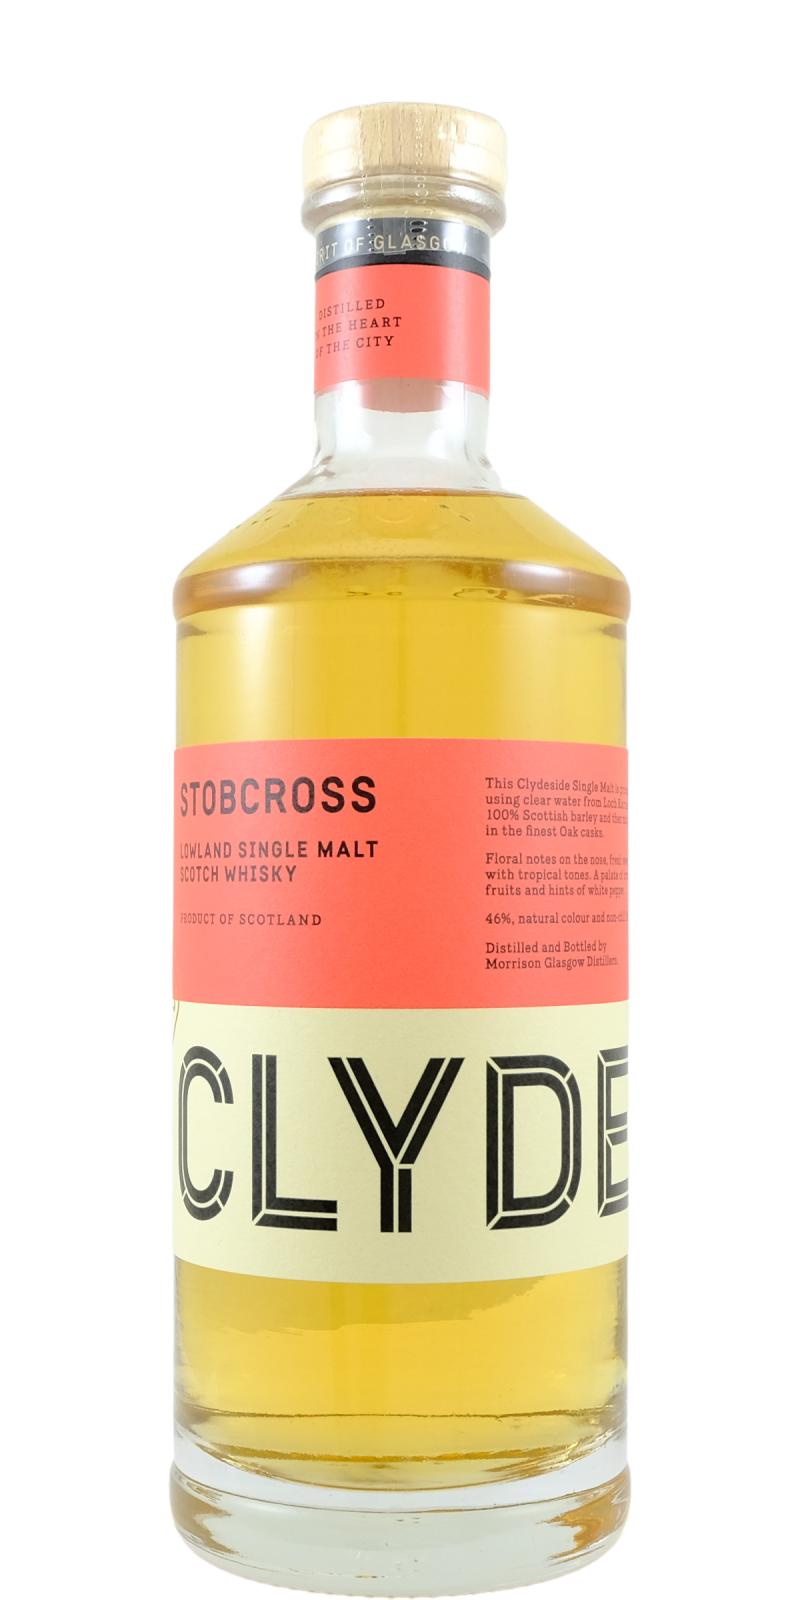 The Clydeside Distillery Stobcross